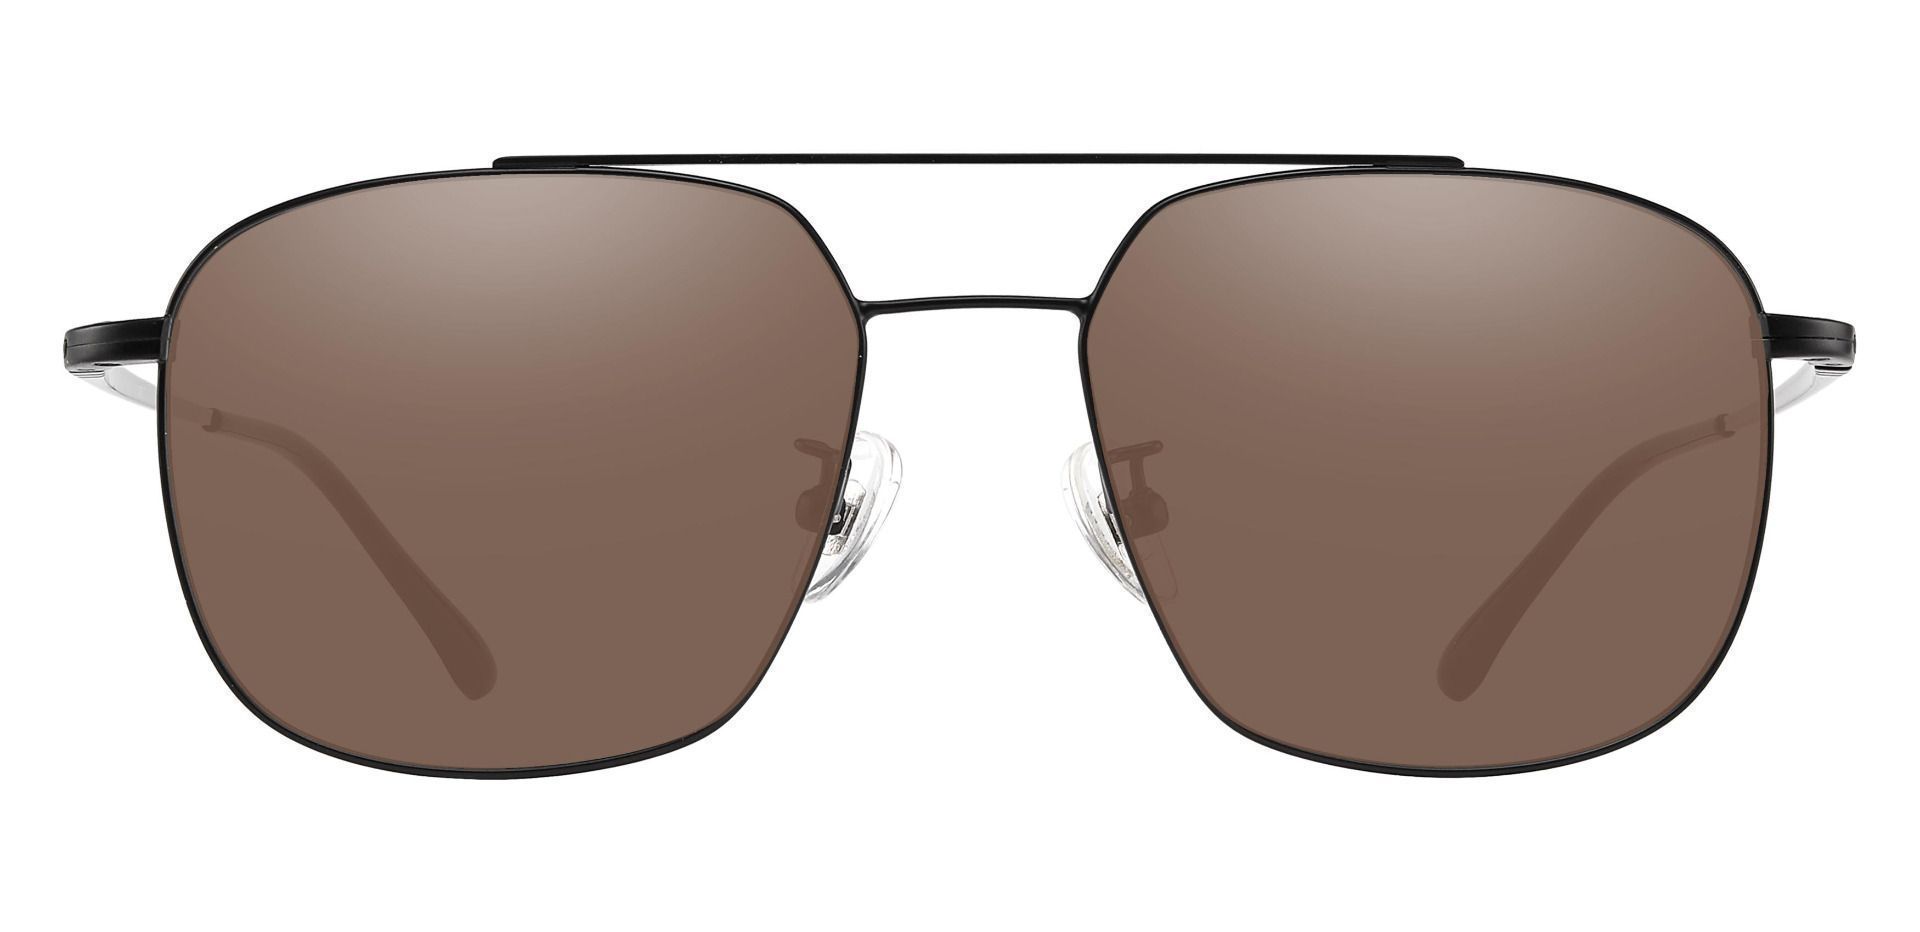 Trevor Aviator Progressive Sunglasses - Black Frame With Brown Lenses